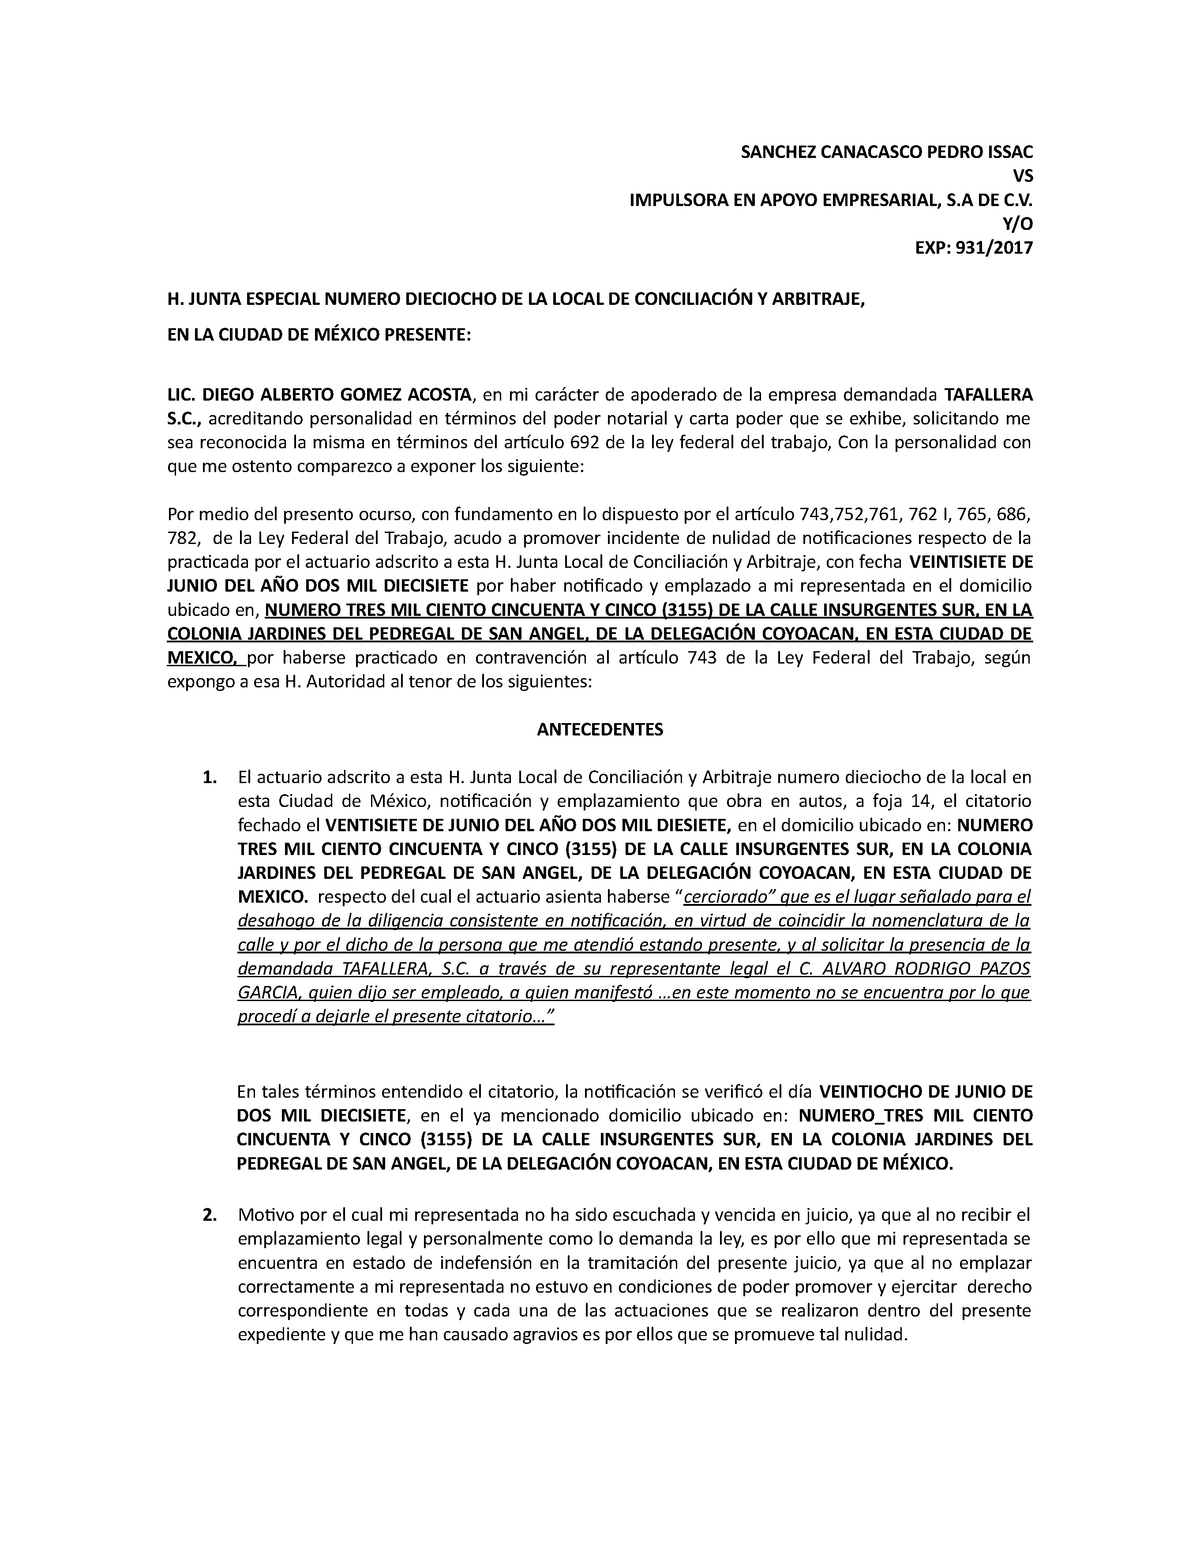 Incidente DE Nulidad DE Notificaciones - SANCHEZ CANACASCO PEDRO ISSAC VS  IMPULSORA EN APOYO - Studocu